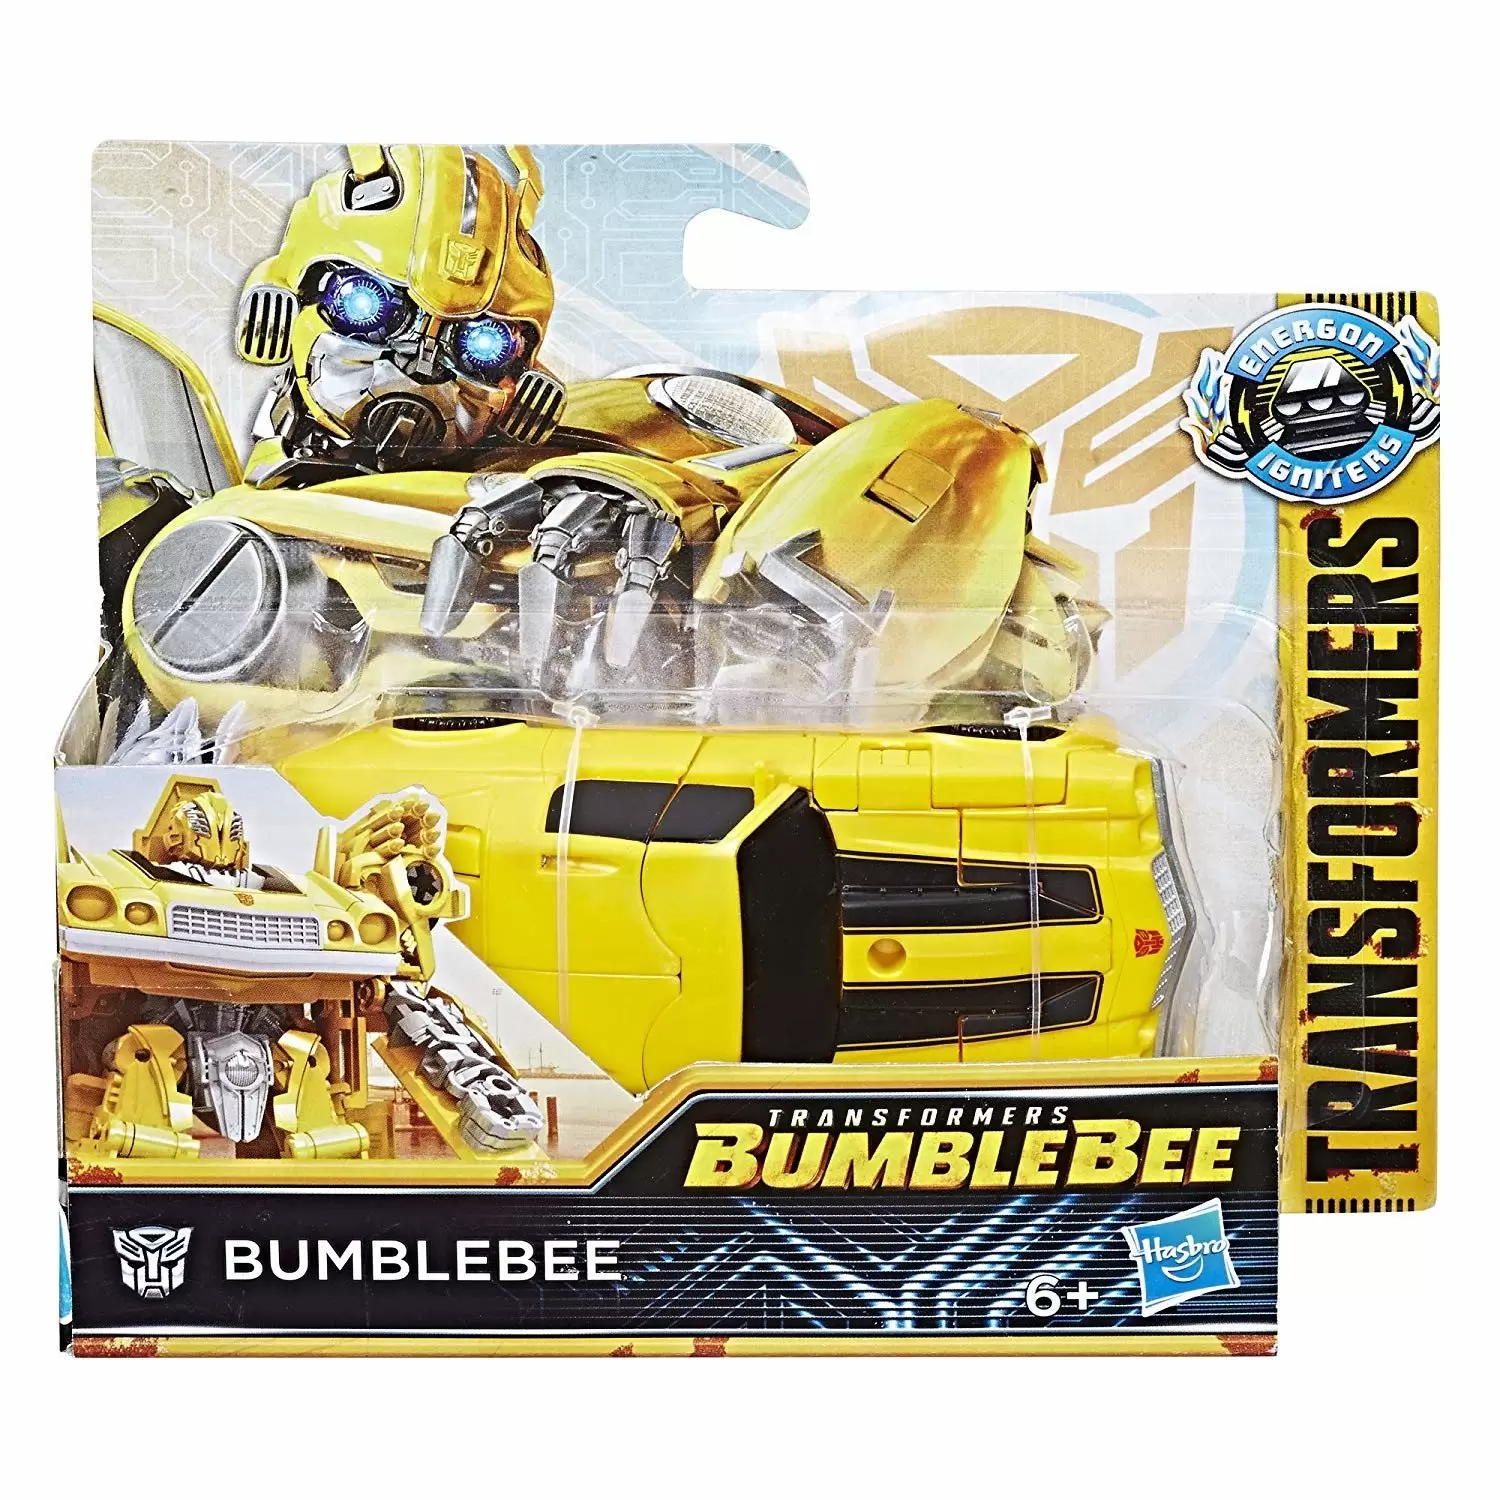 Energon Igniters - Energon Igniters - Bumblebee